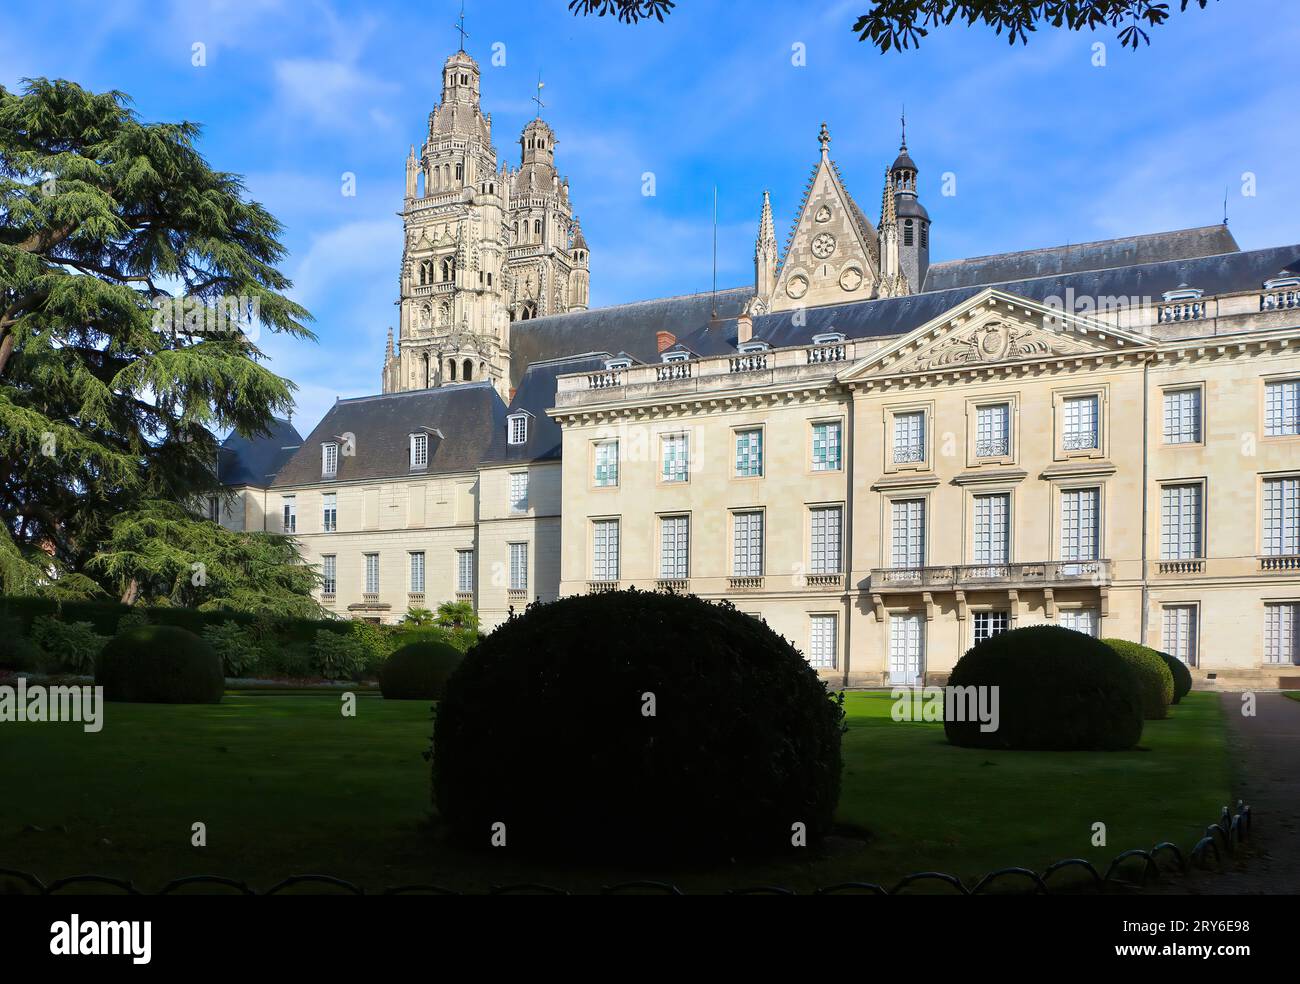 Façade du musée des Beaux-Arts vue de l'autre côté des jardins avec les clochers de la cathédrale derrière Tours Indre-et-Loire France Banque D'Images